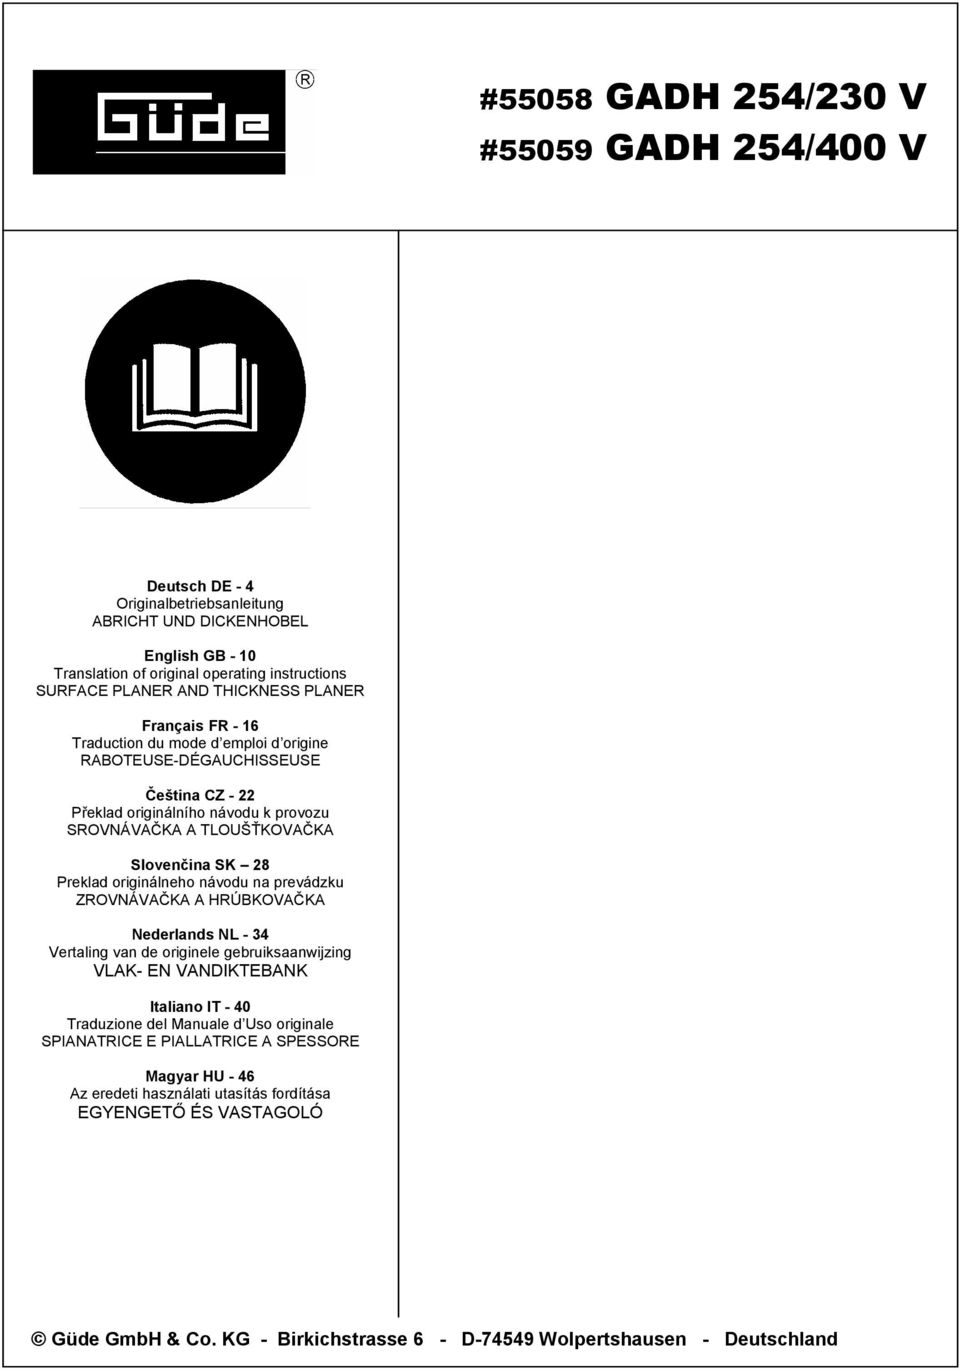 Preklad originálneho návodu na prevádzku ZROVNÁVAČKA A HRÚBKOVAČKA Nederlands NL - 34 Vertaling van de originele gebruiksaanwijzing VLAK- EN VANDIKTEBANK Italiano IT - 40 Traduzione del Manuale d